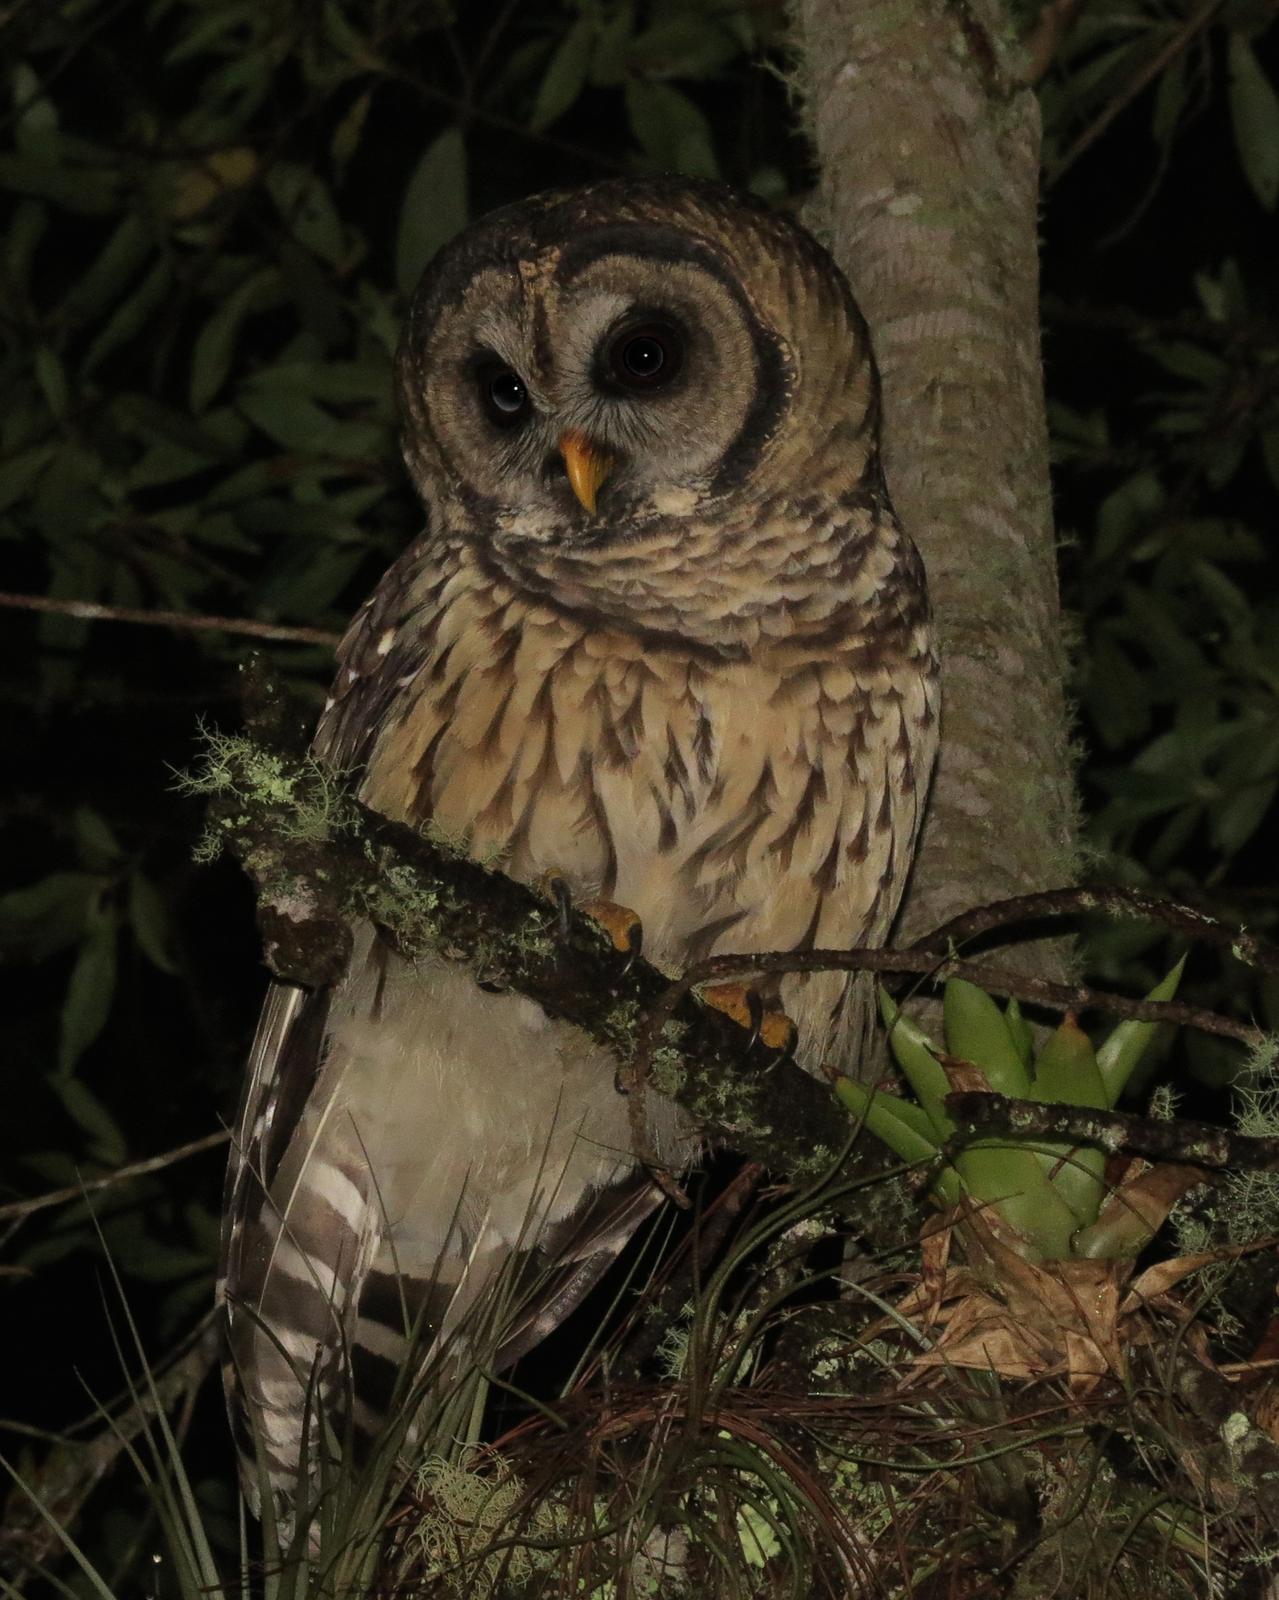 Fulvous Owl Photo by John van Dort